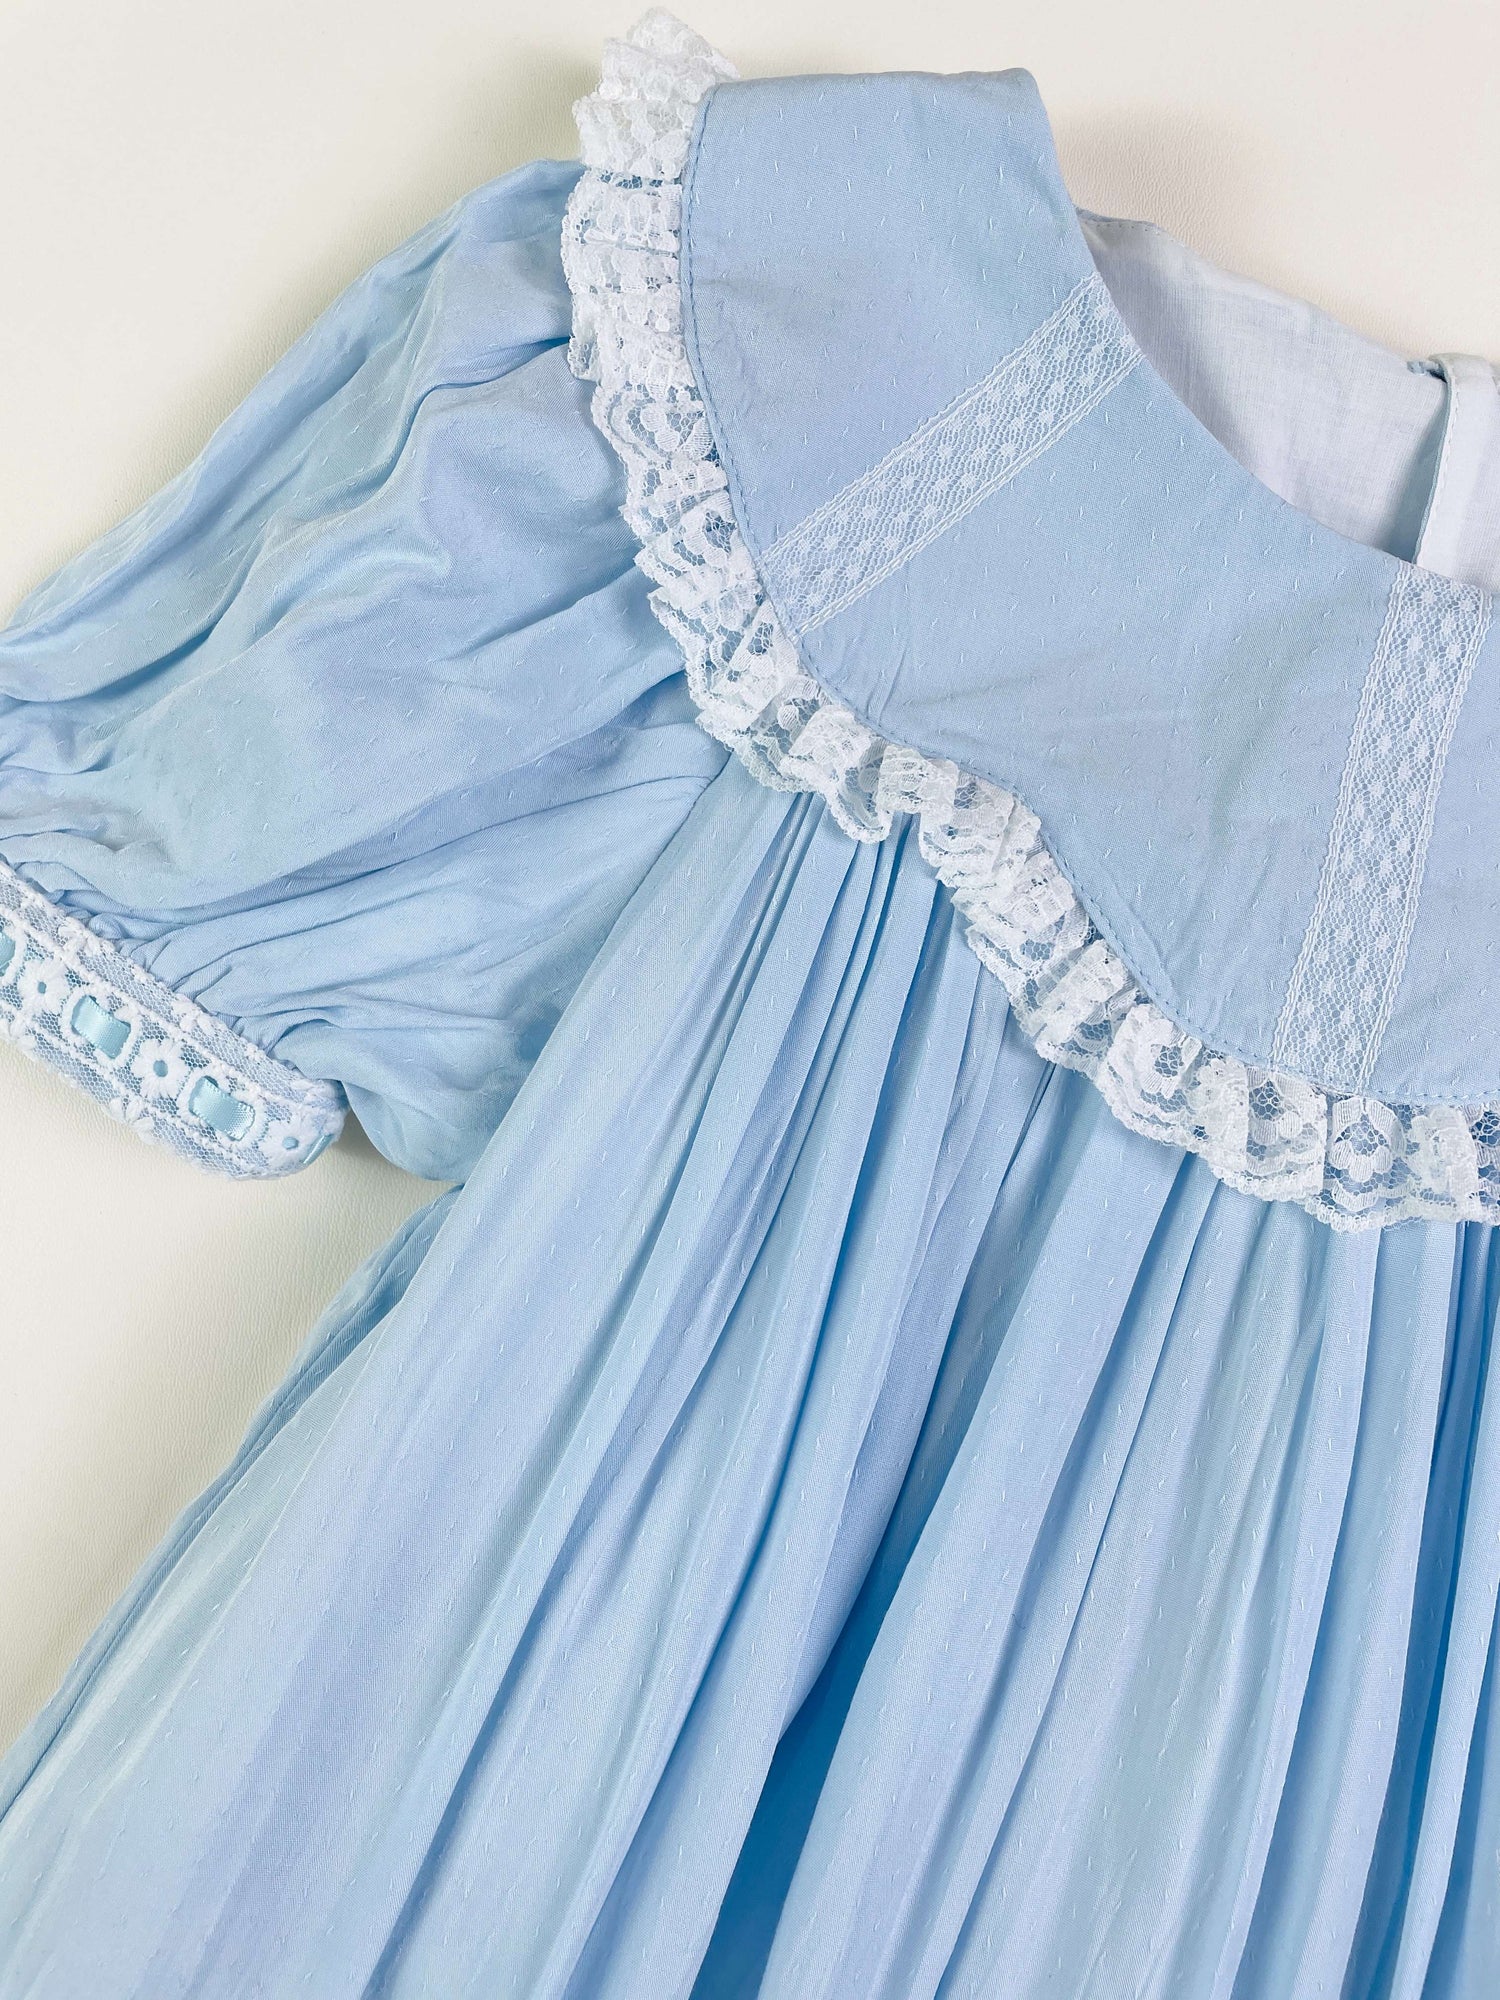 JannyBB Blue Vintage Wave Sailor Neck Heirloom Dress